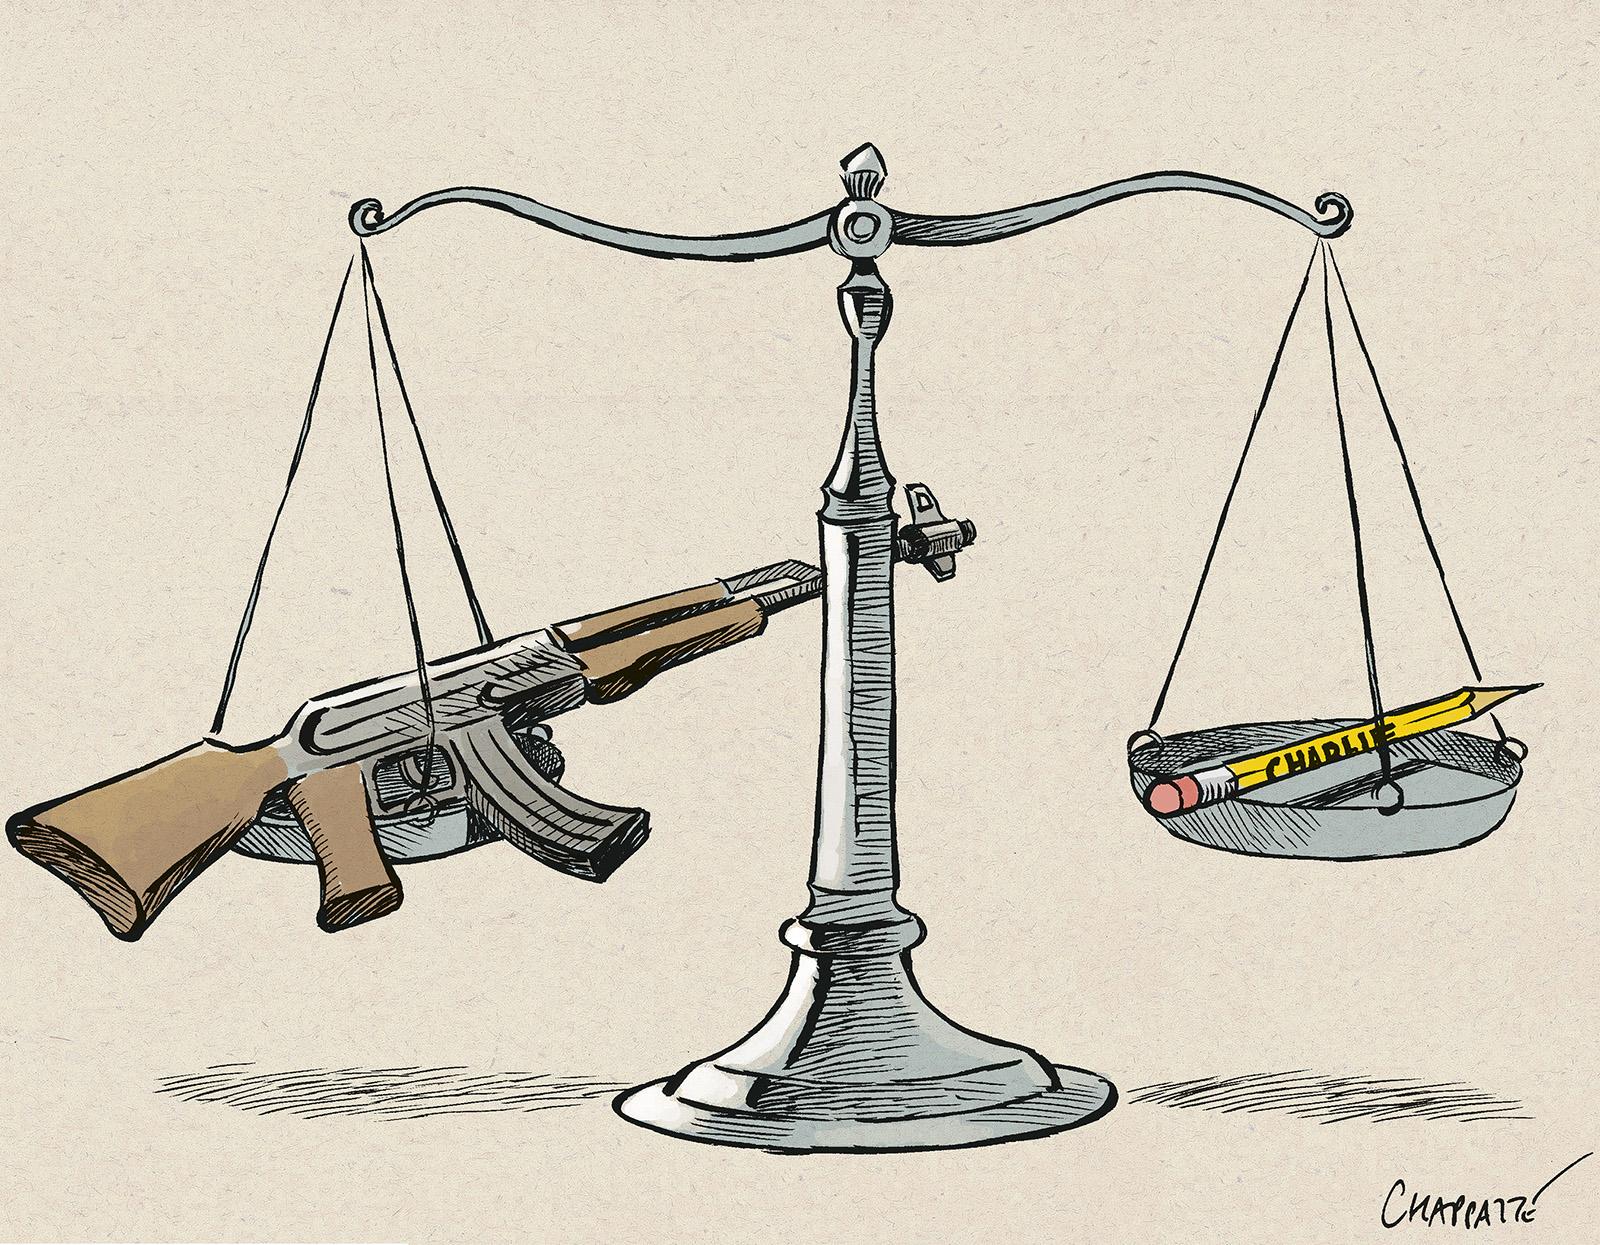 Trial of the Charlie Hebdo massacre